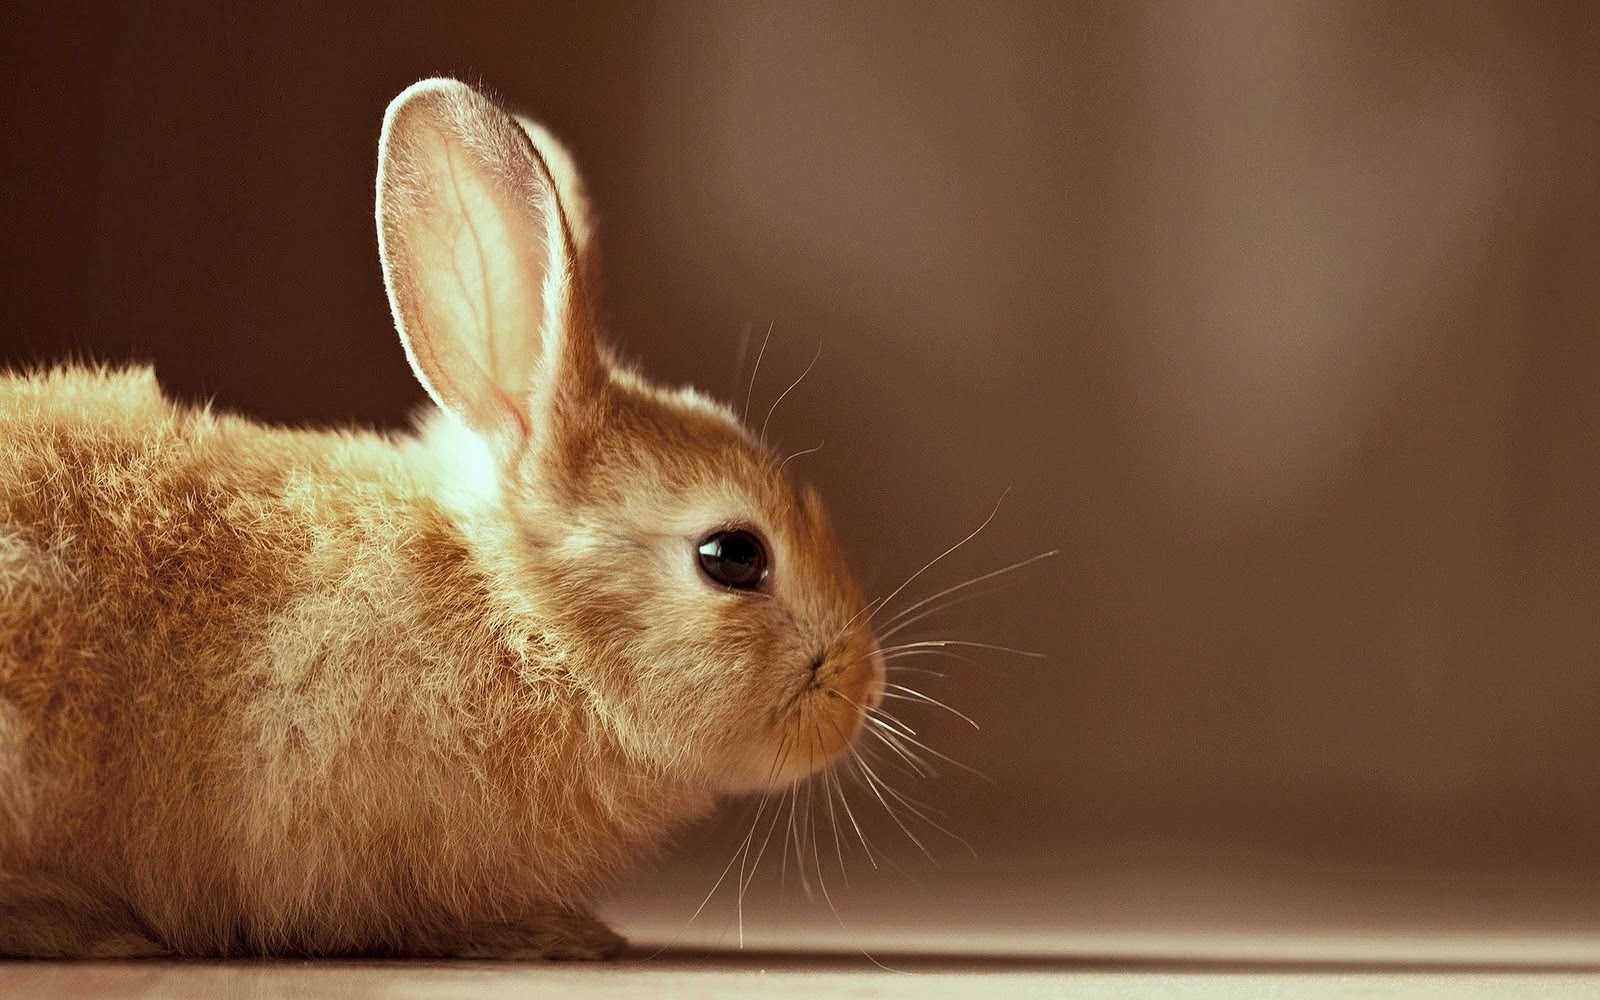 토끼 벽지,국내 토끼,토끼,토끼와 토끼,구레나룻,토끼